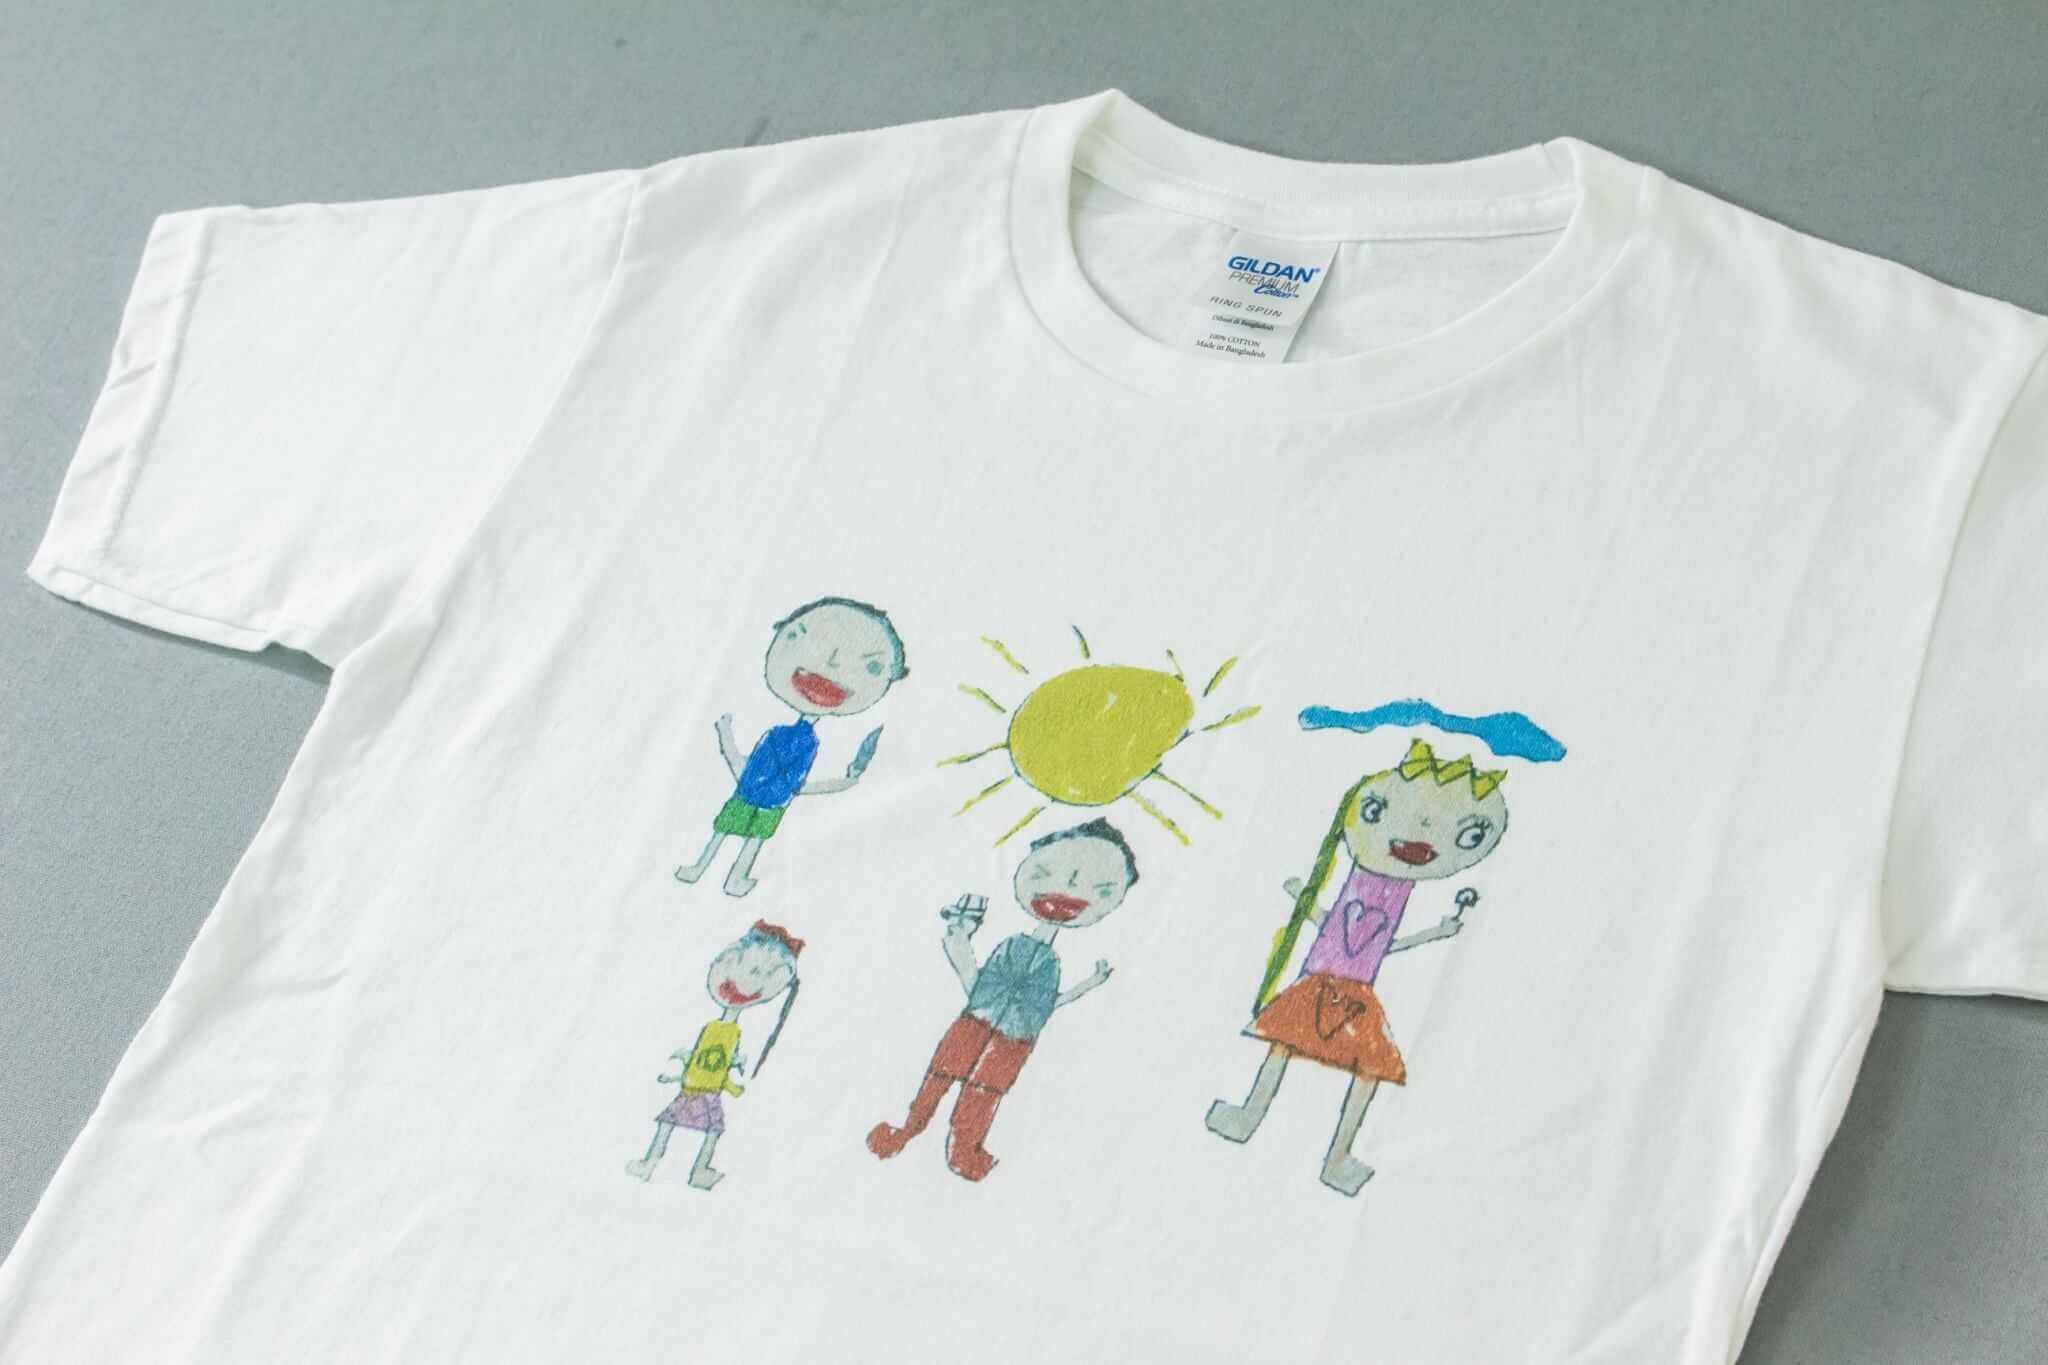 客製化T恤- 小朋友塗鴉系列2的第2張圖(客製化公司制服、班服製作、團體服製作等示意或作品圖)